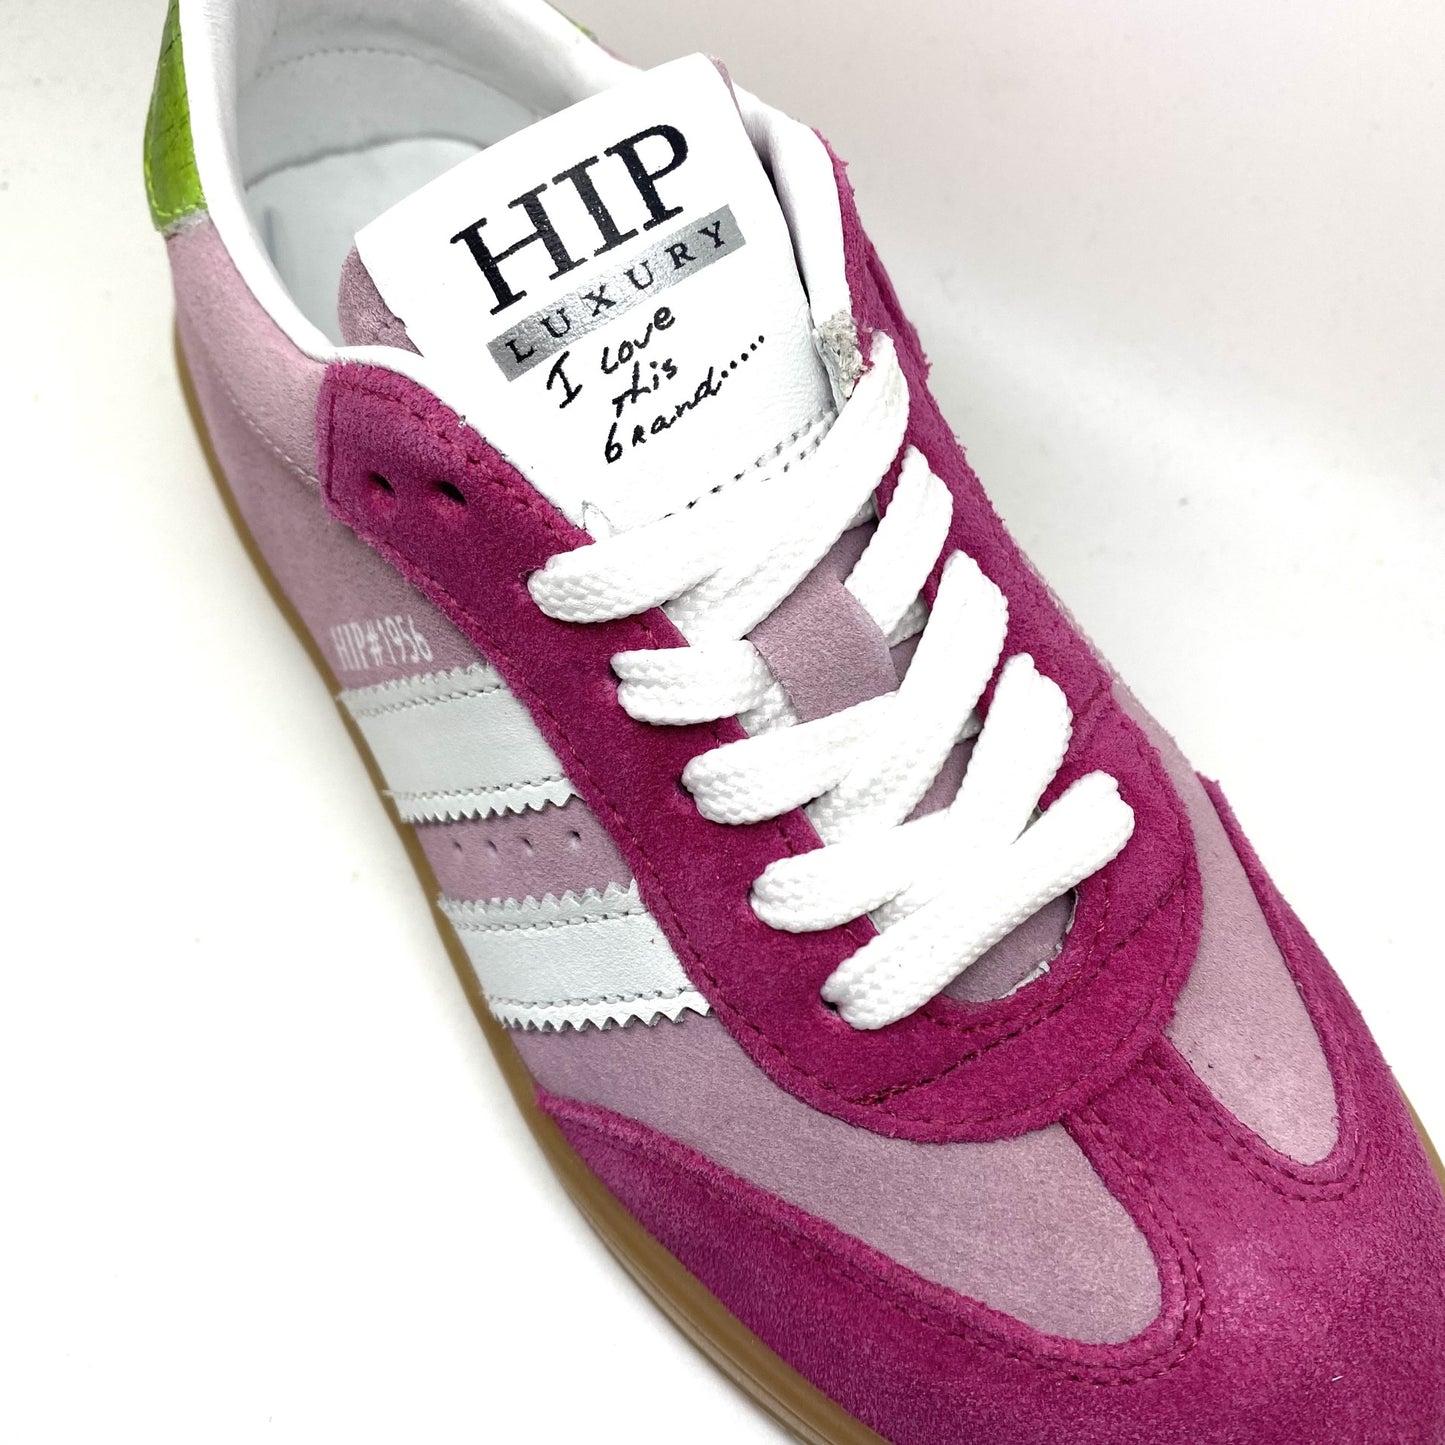 Hip lage roze sneaker.